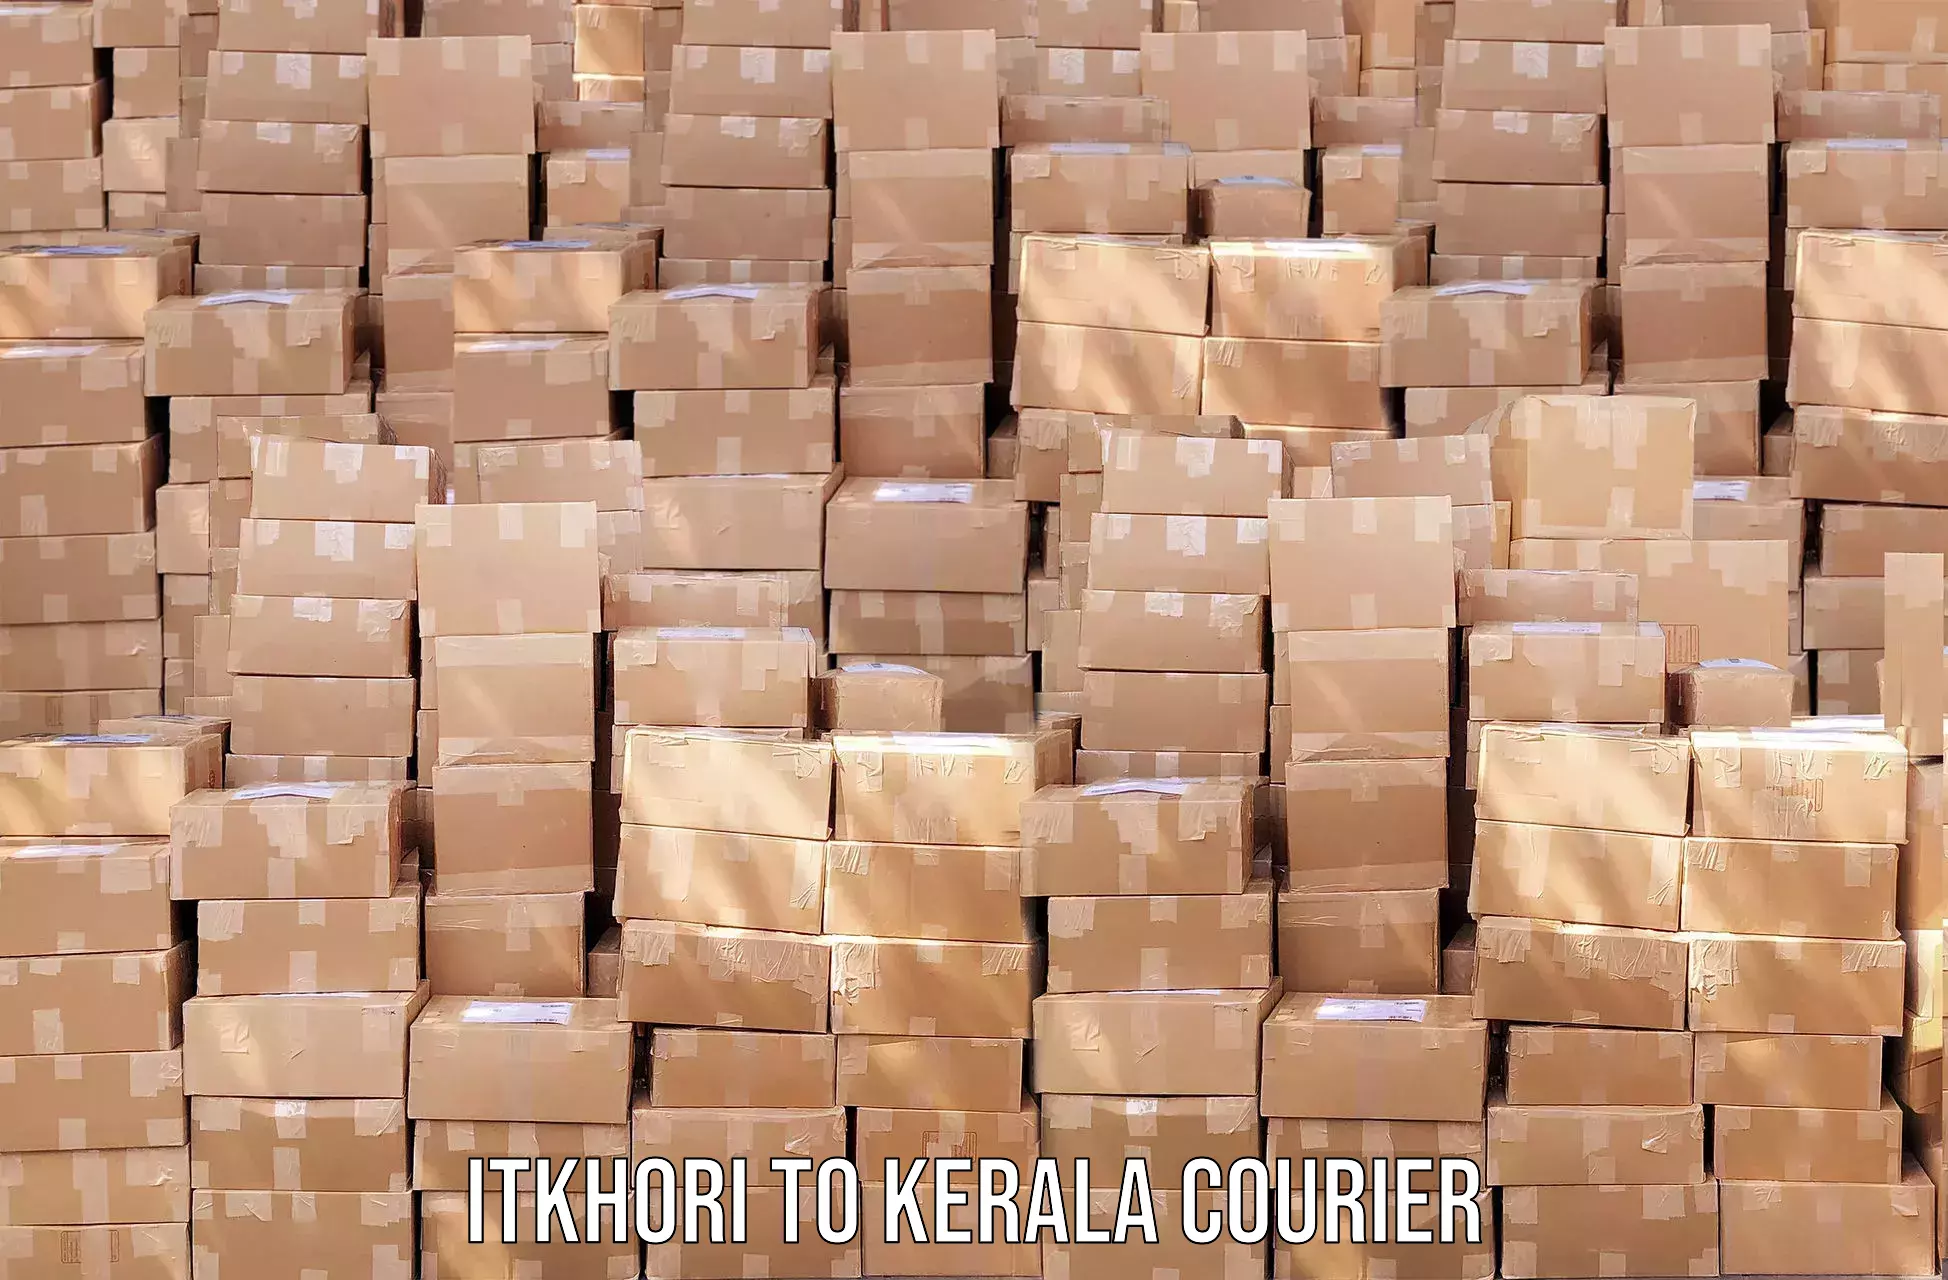 Door-to-door freight service Itkhori to Kerala